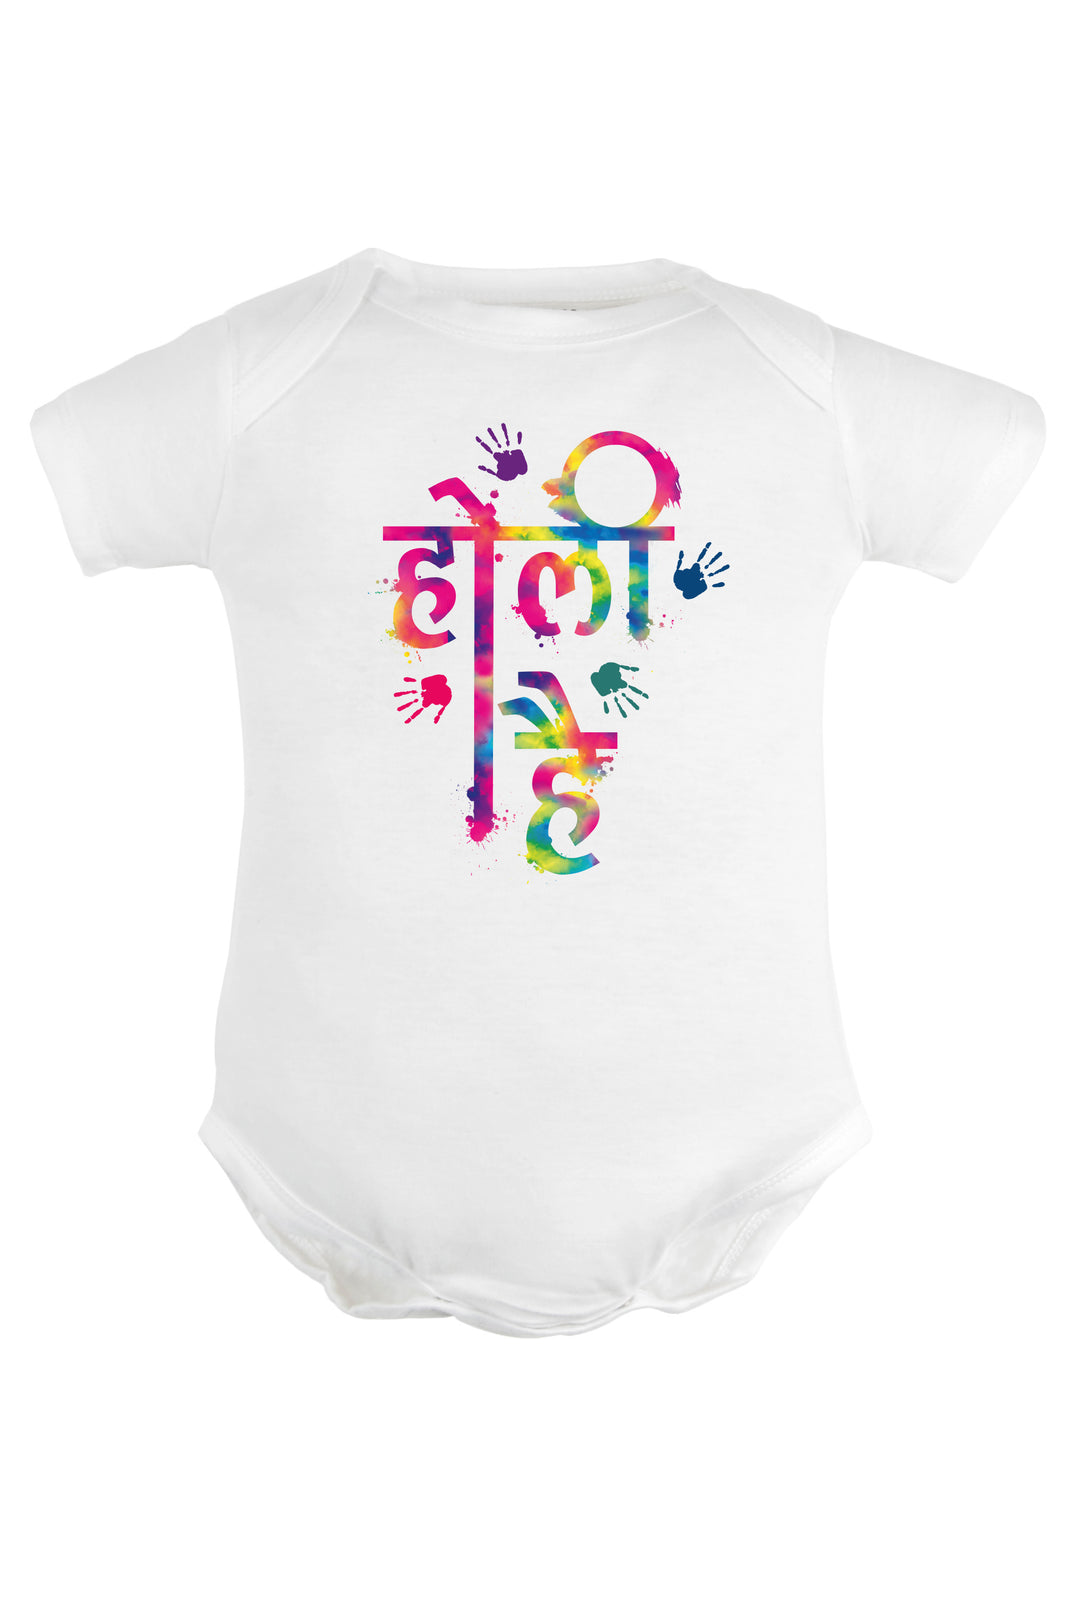 Holi Hai (Hindi) Baby Romper | Onesies